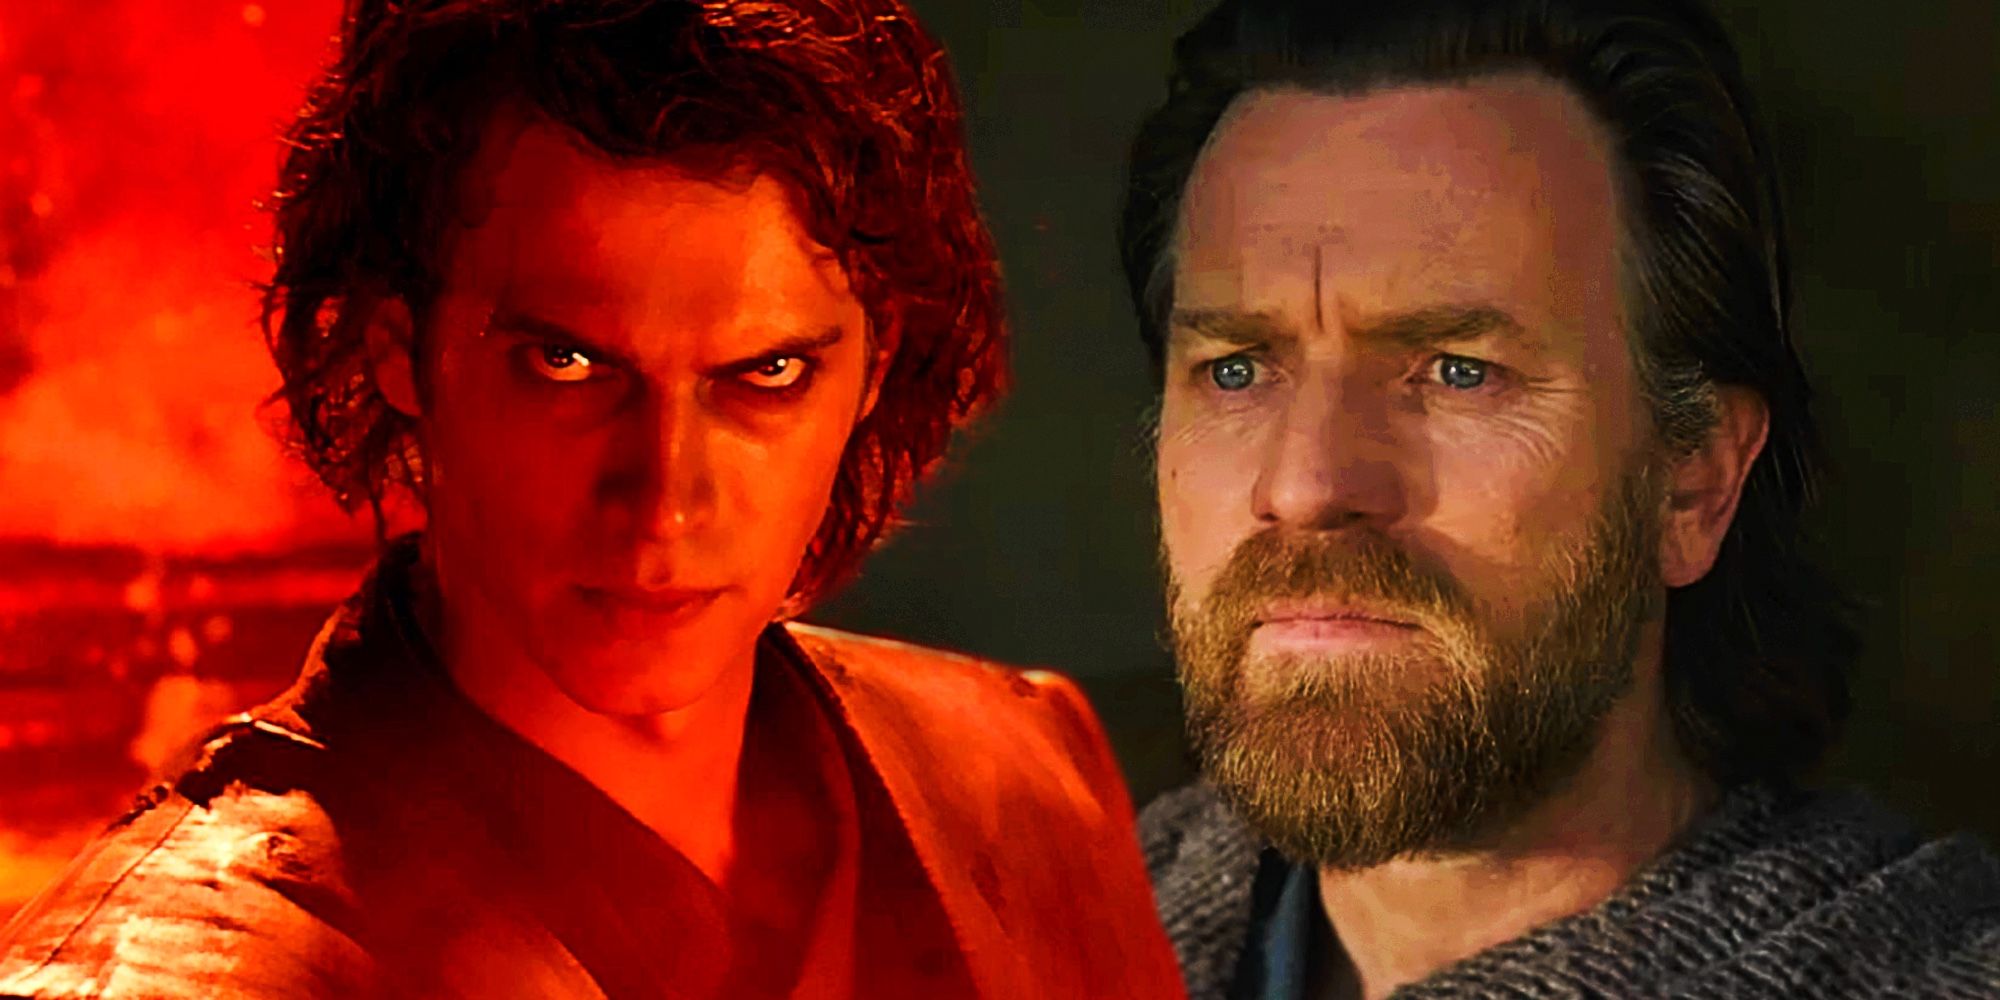 Disney Star Wars culpa erróneamente a Obi-Wan por la caída del lado oscuro de Anakin